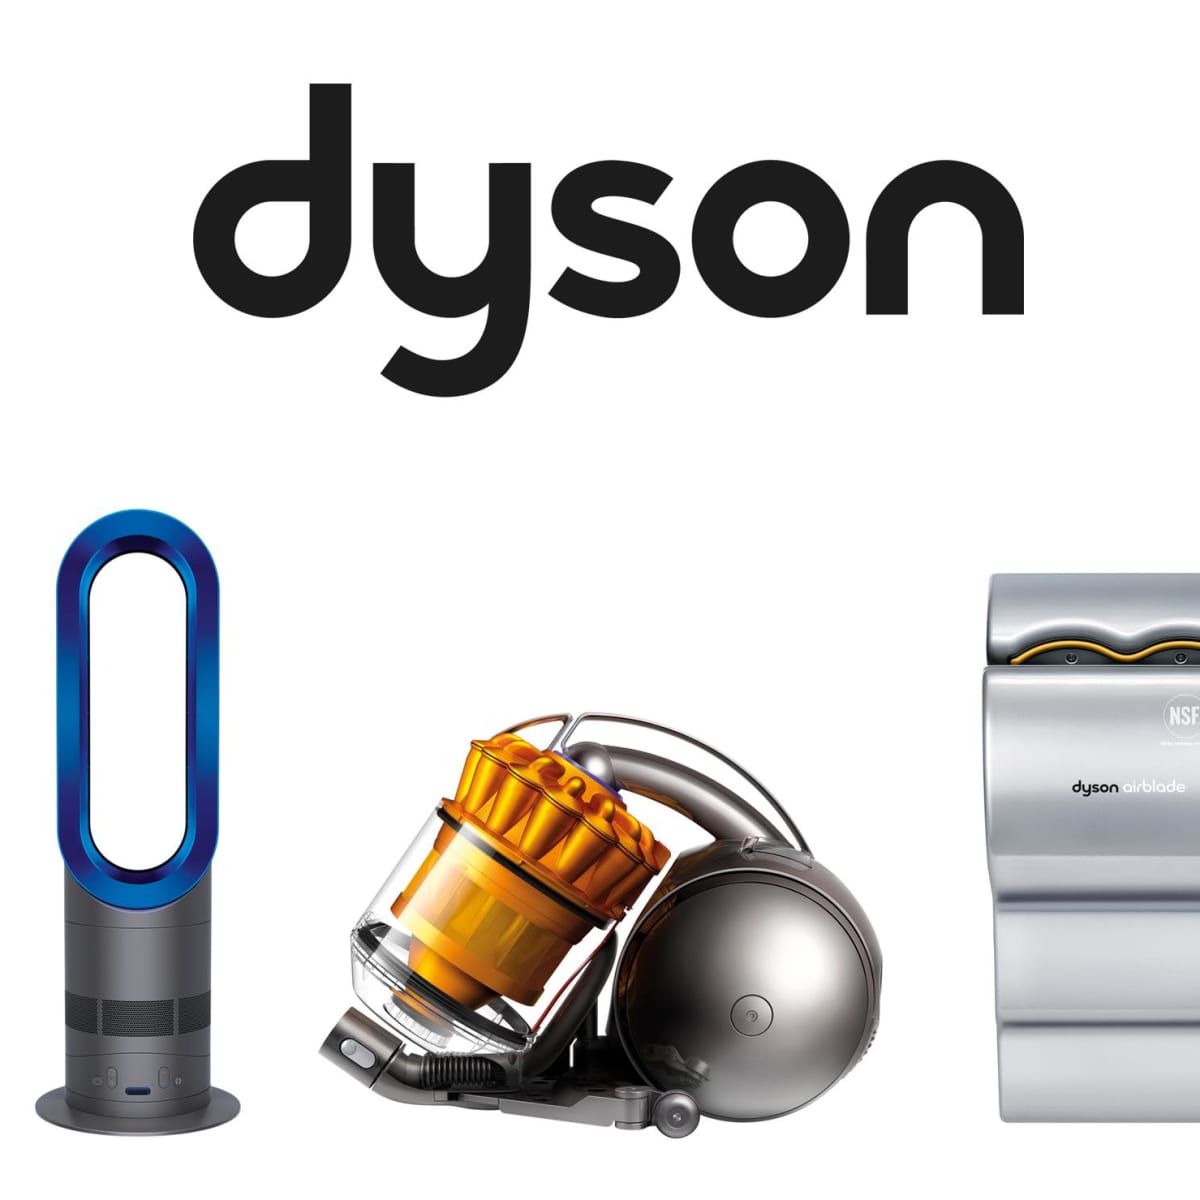 Дайсон горячая линия. Dyson. Дайсон бренд. Дайсон логотип. Пылесос Dyson логотип.